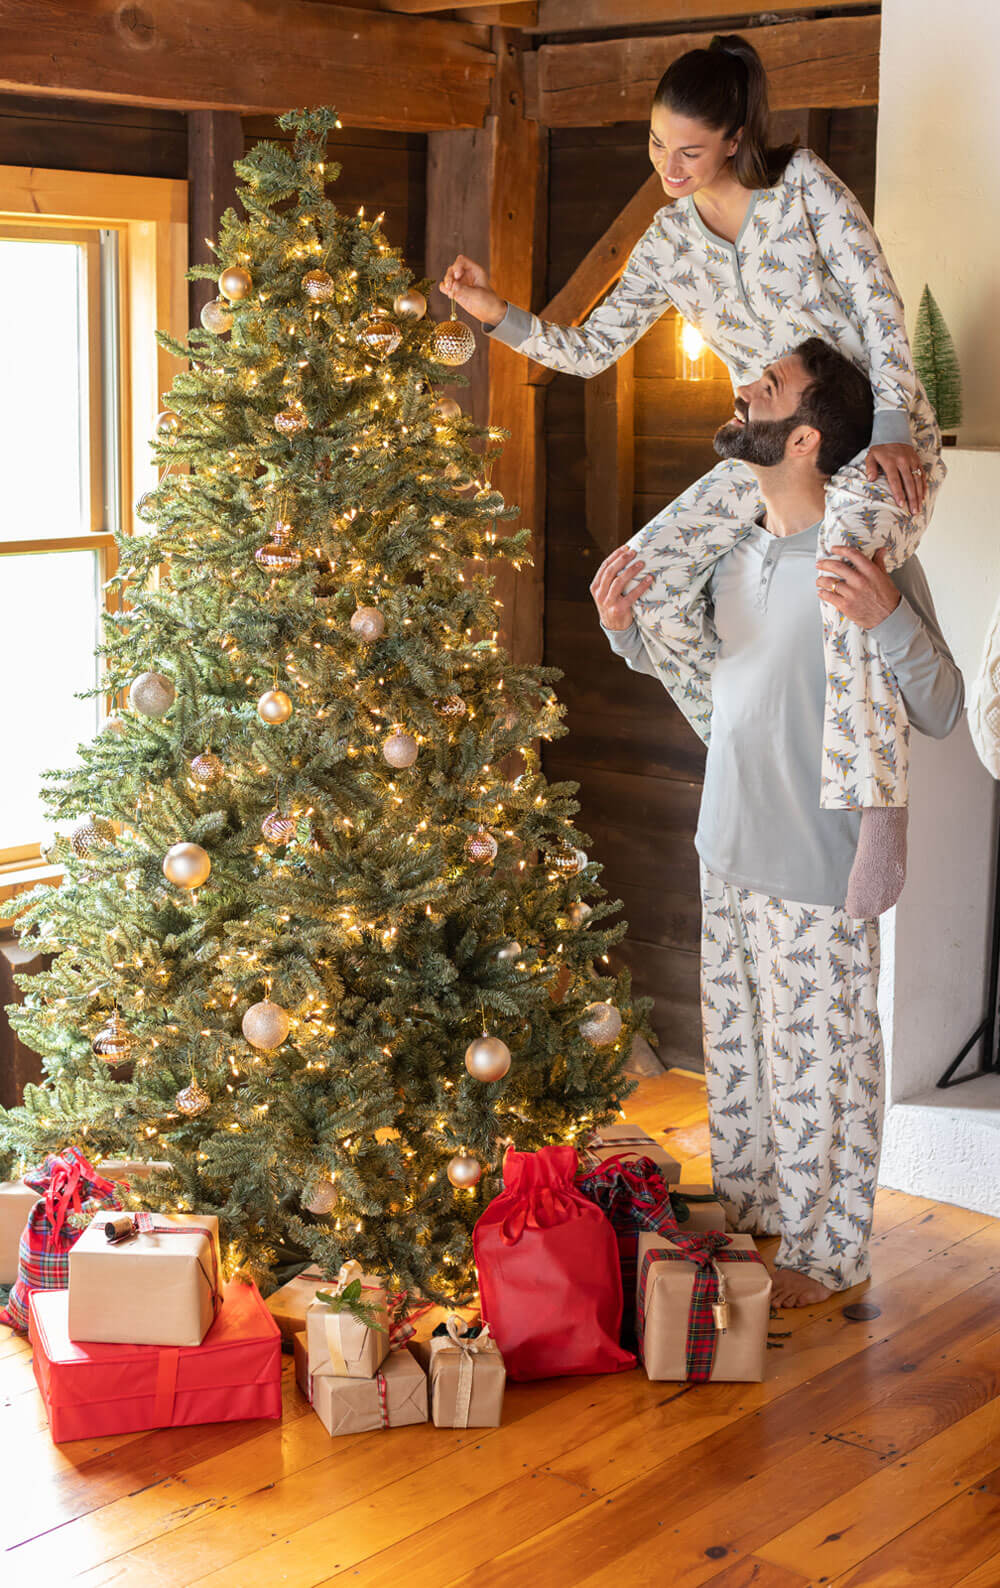 Christmas Tree Print Family Pajamas